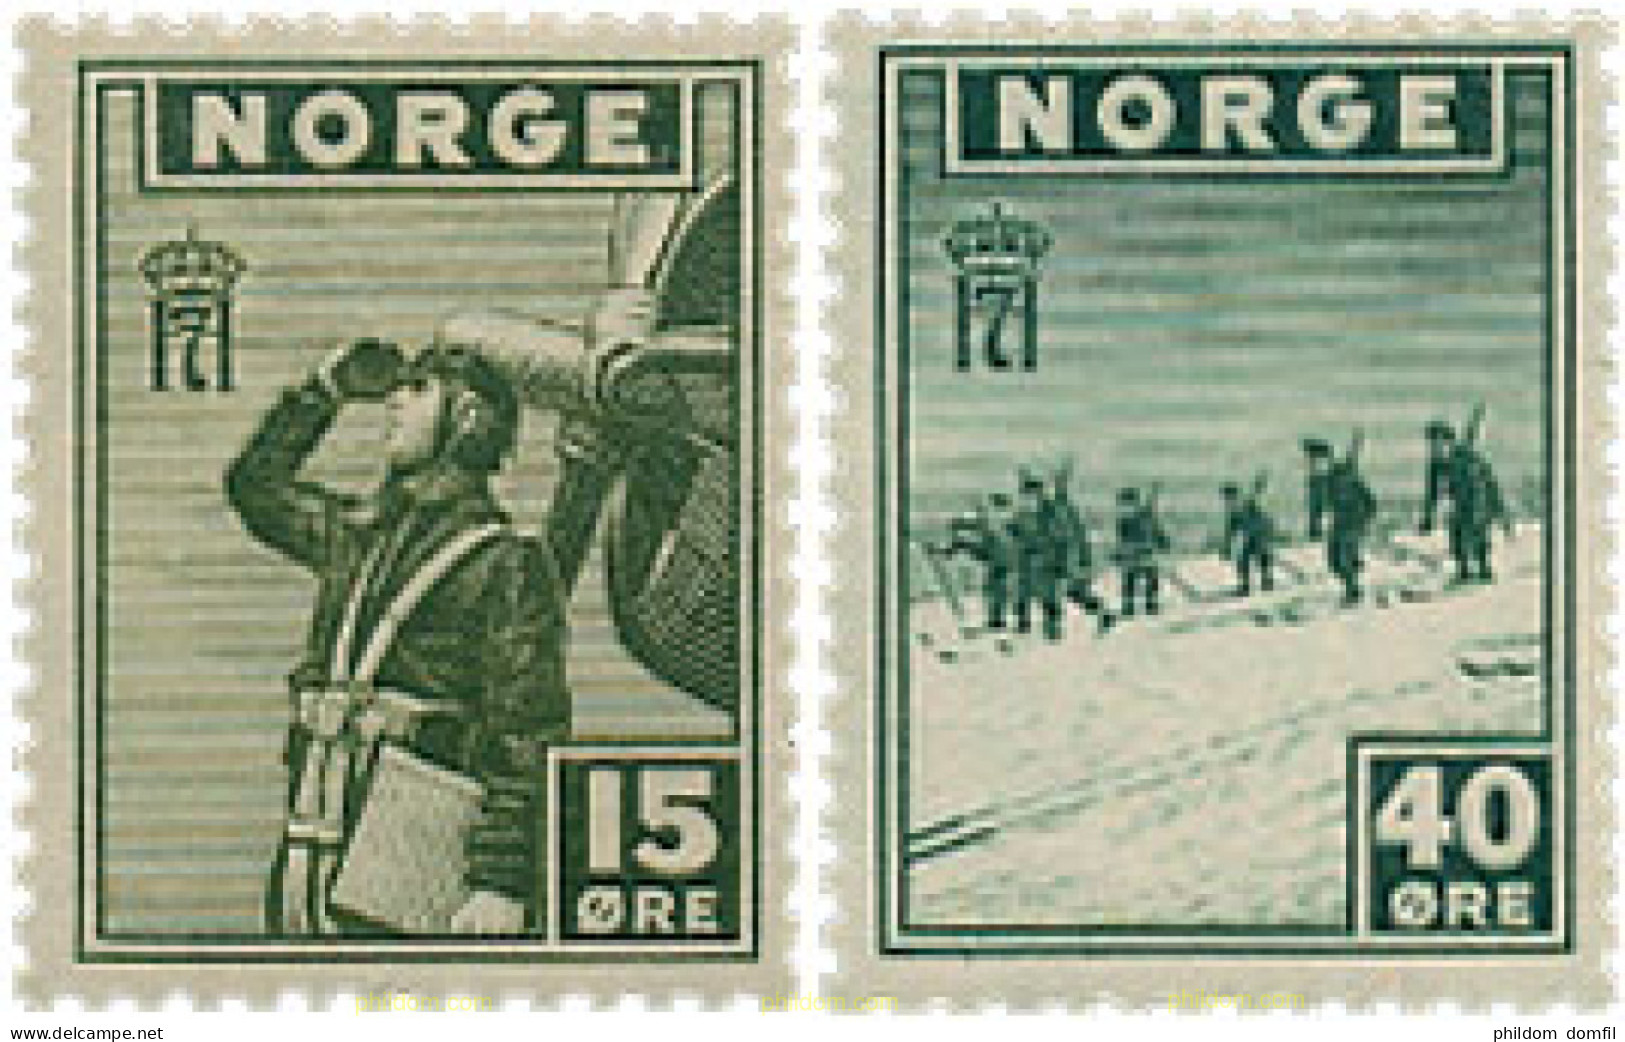 629742 HINGED NORUEGA 1943 MOTIVOS VARIOS - Briefe U. Dokumente